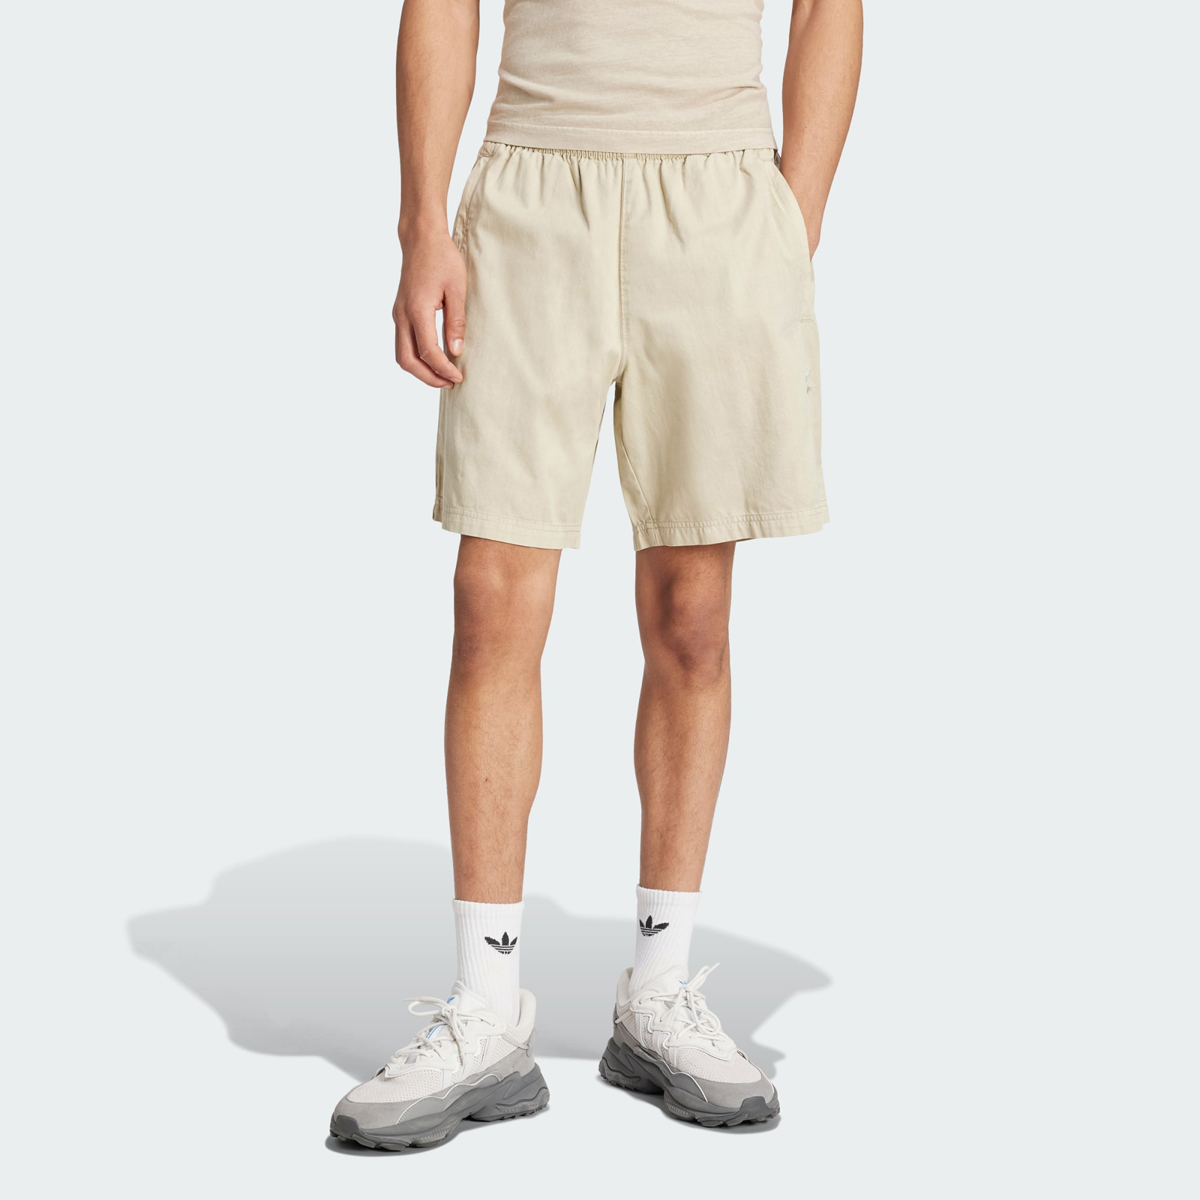 adidas-Trefoil-Essentials-Dye-Woven-Shorts-Putty-Grey